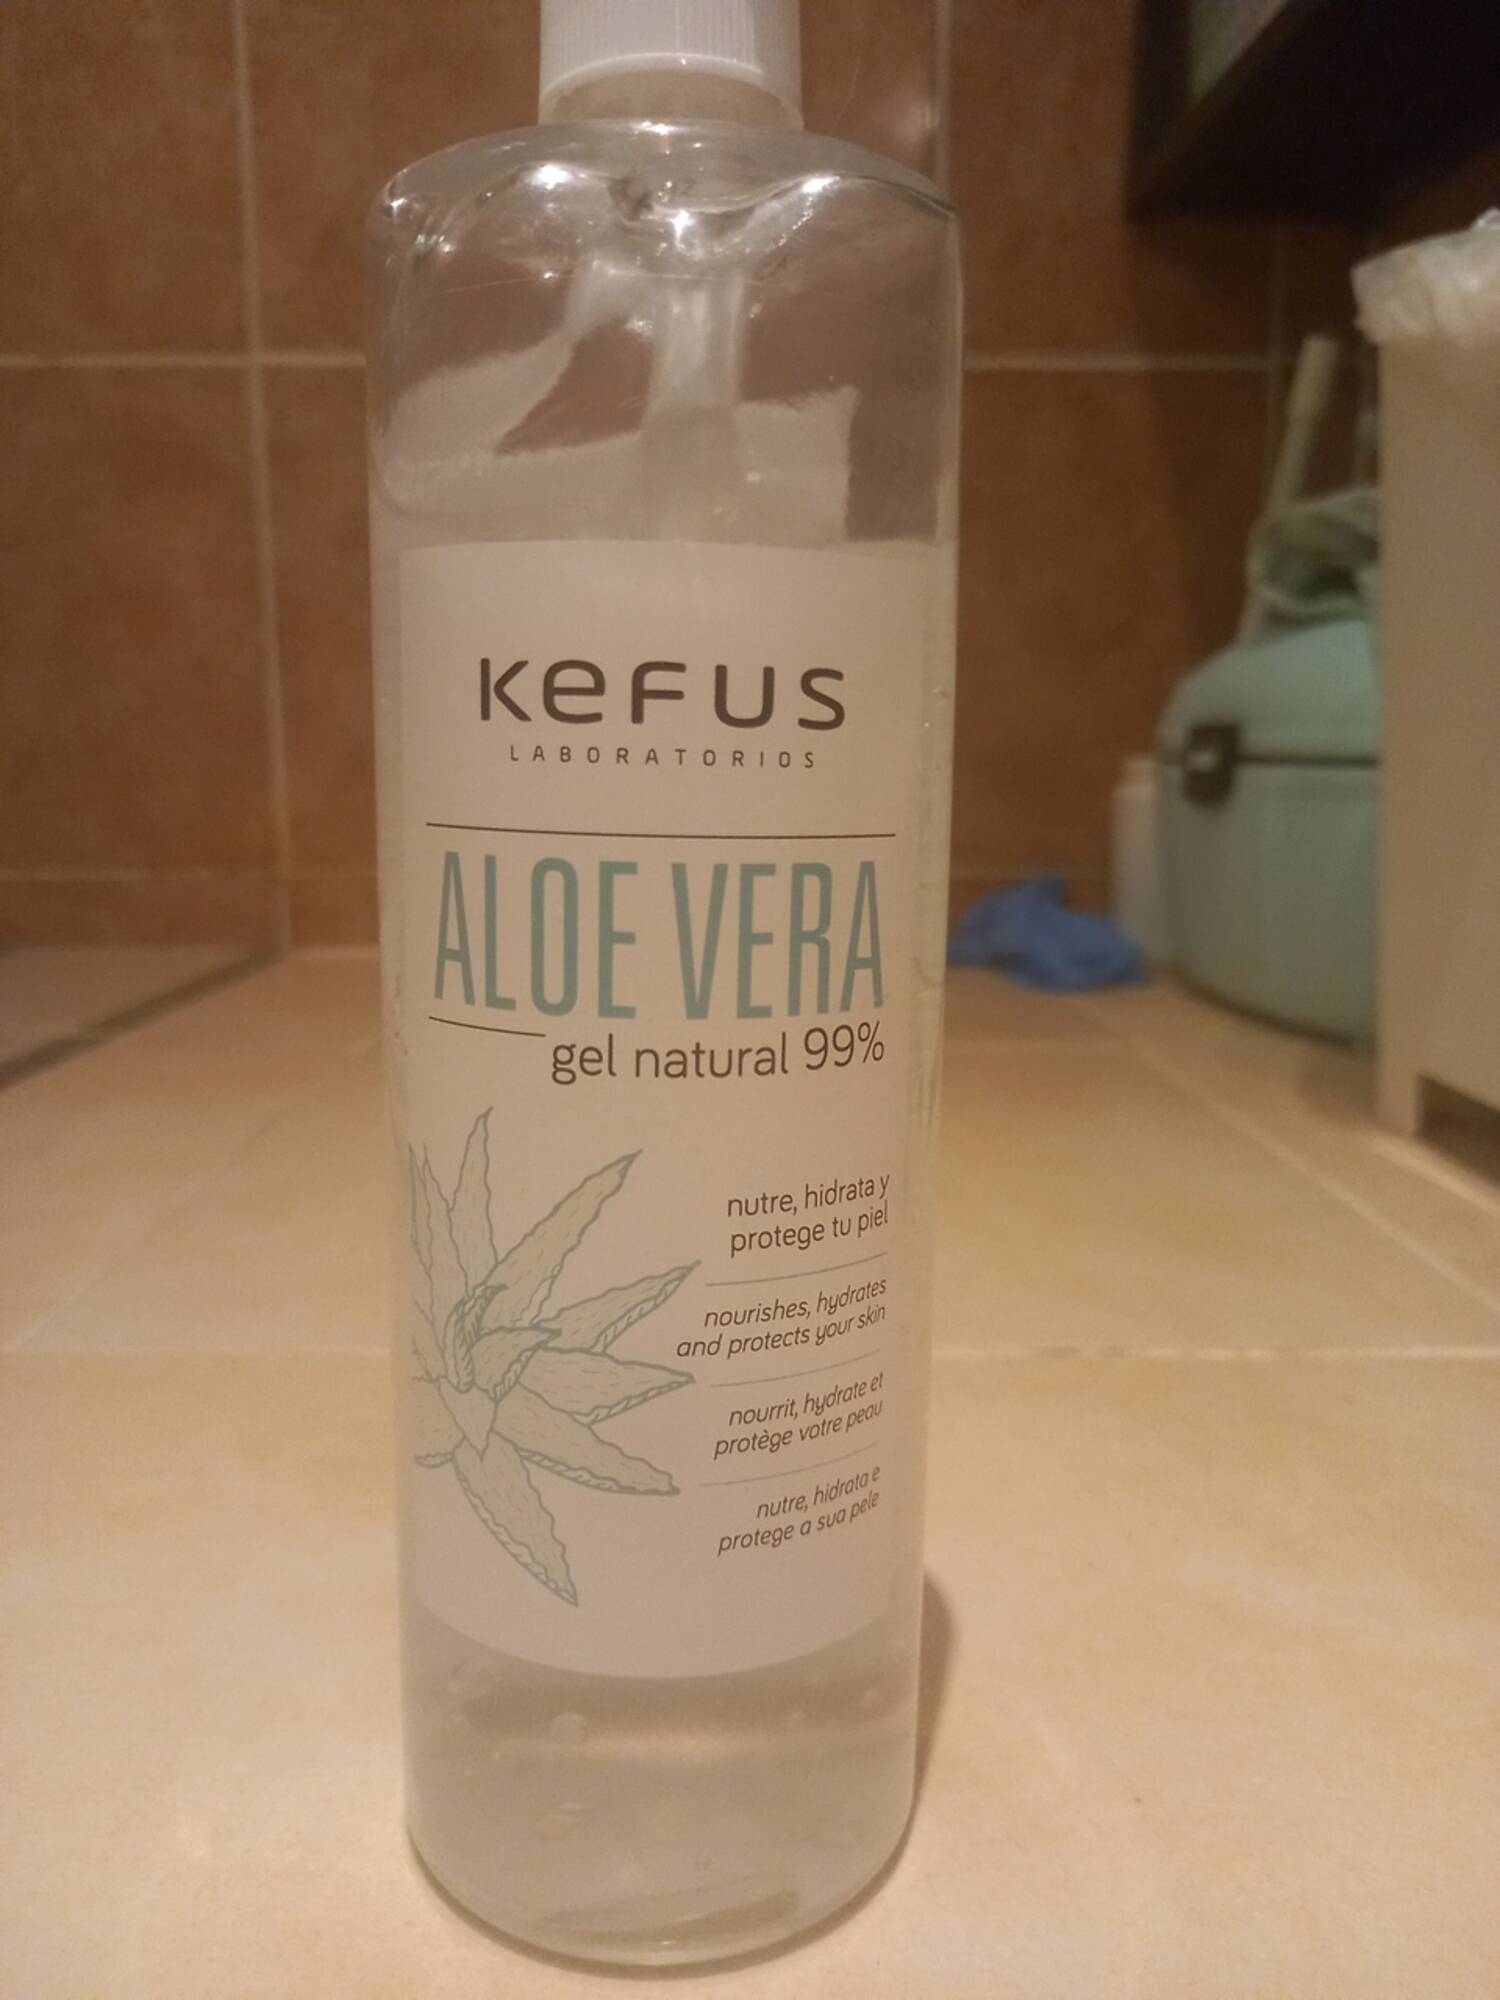 KEFUS - Aloe vera gel natural 99%